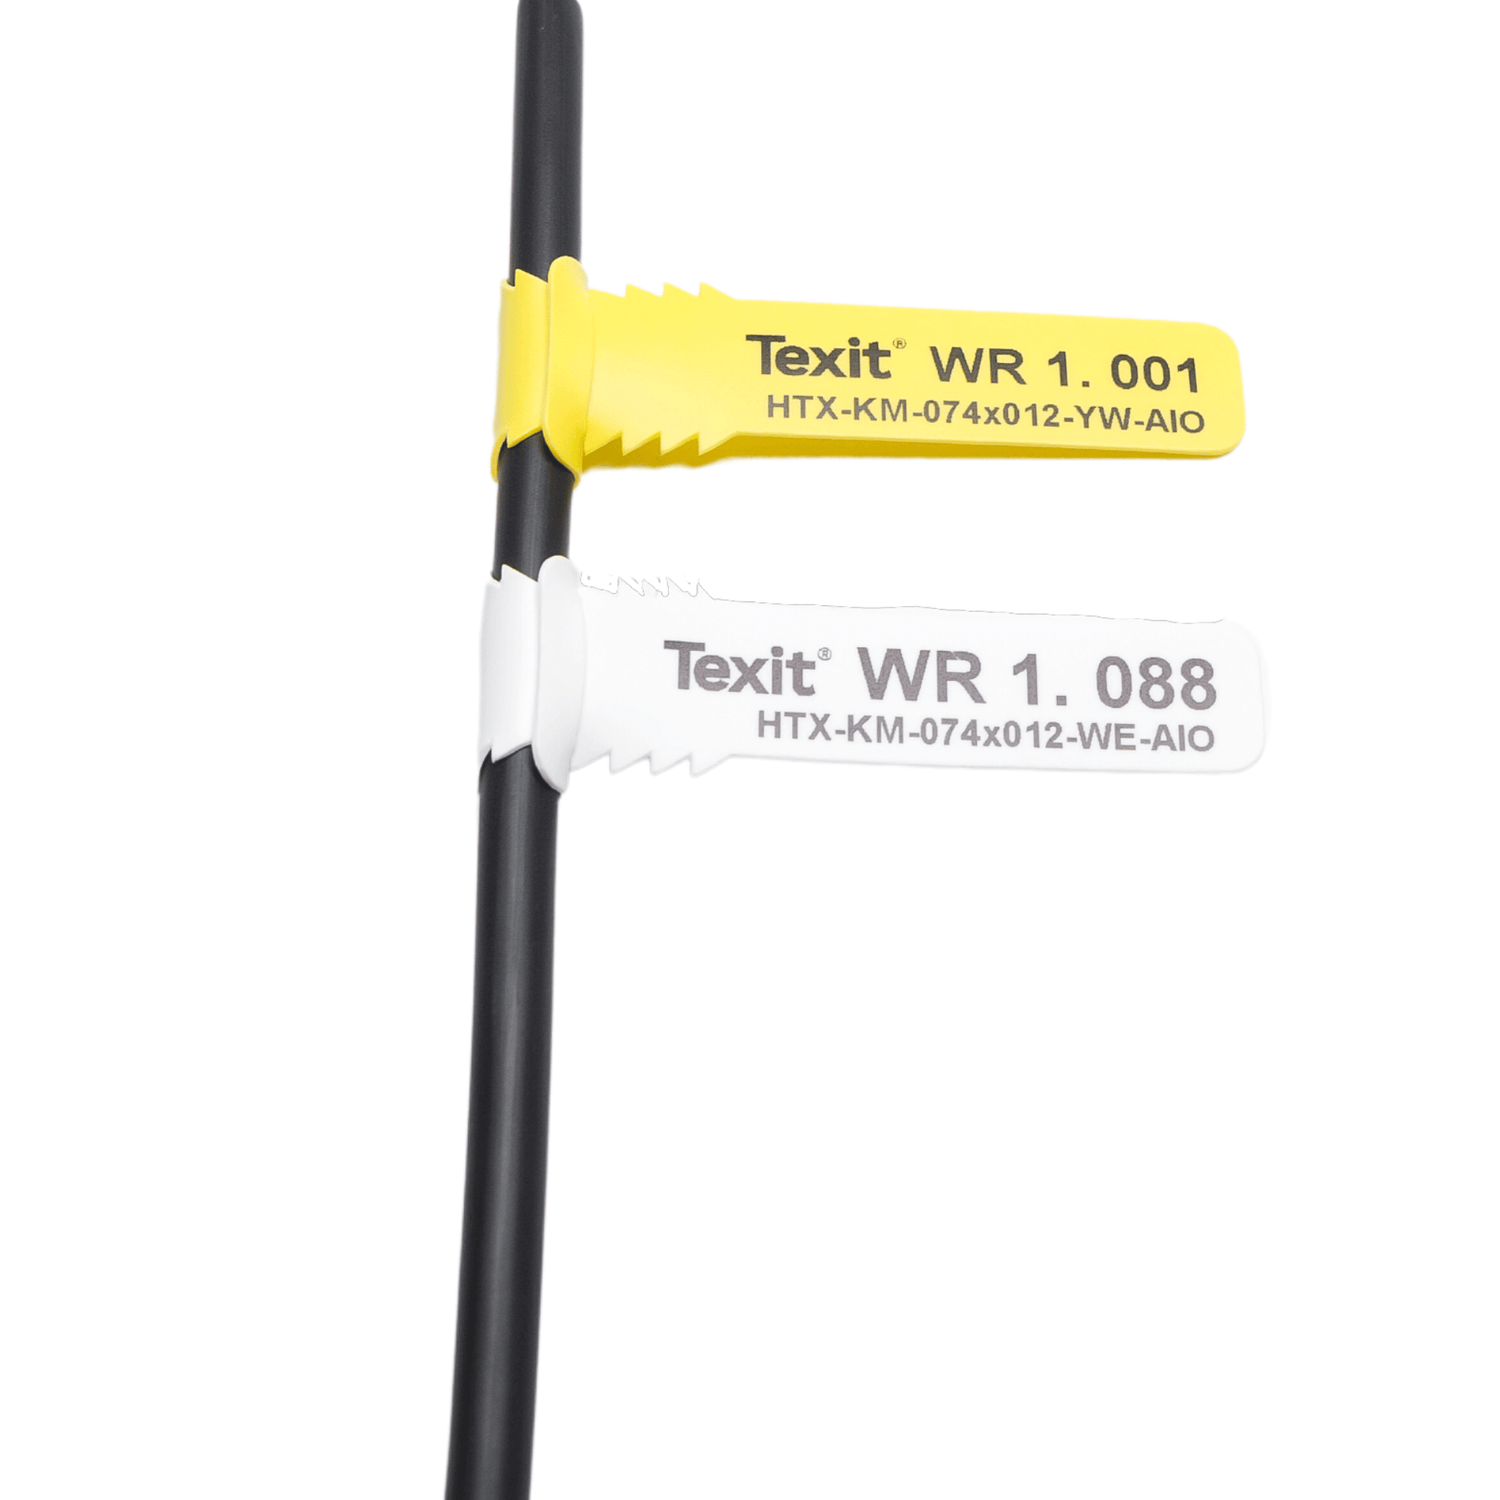 Anlagenkennzeichnung Windenergie Kabel